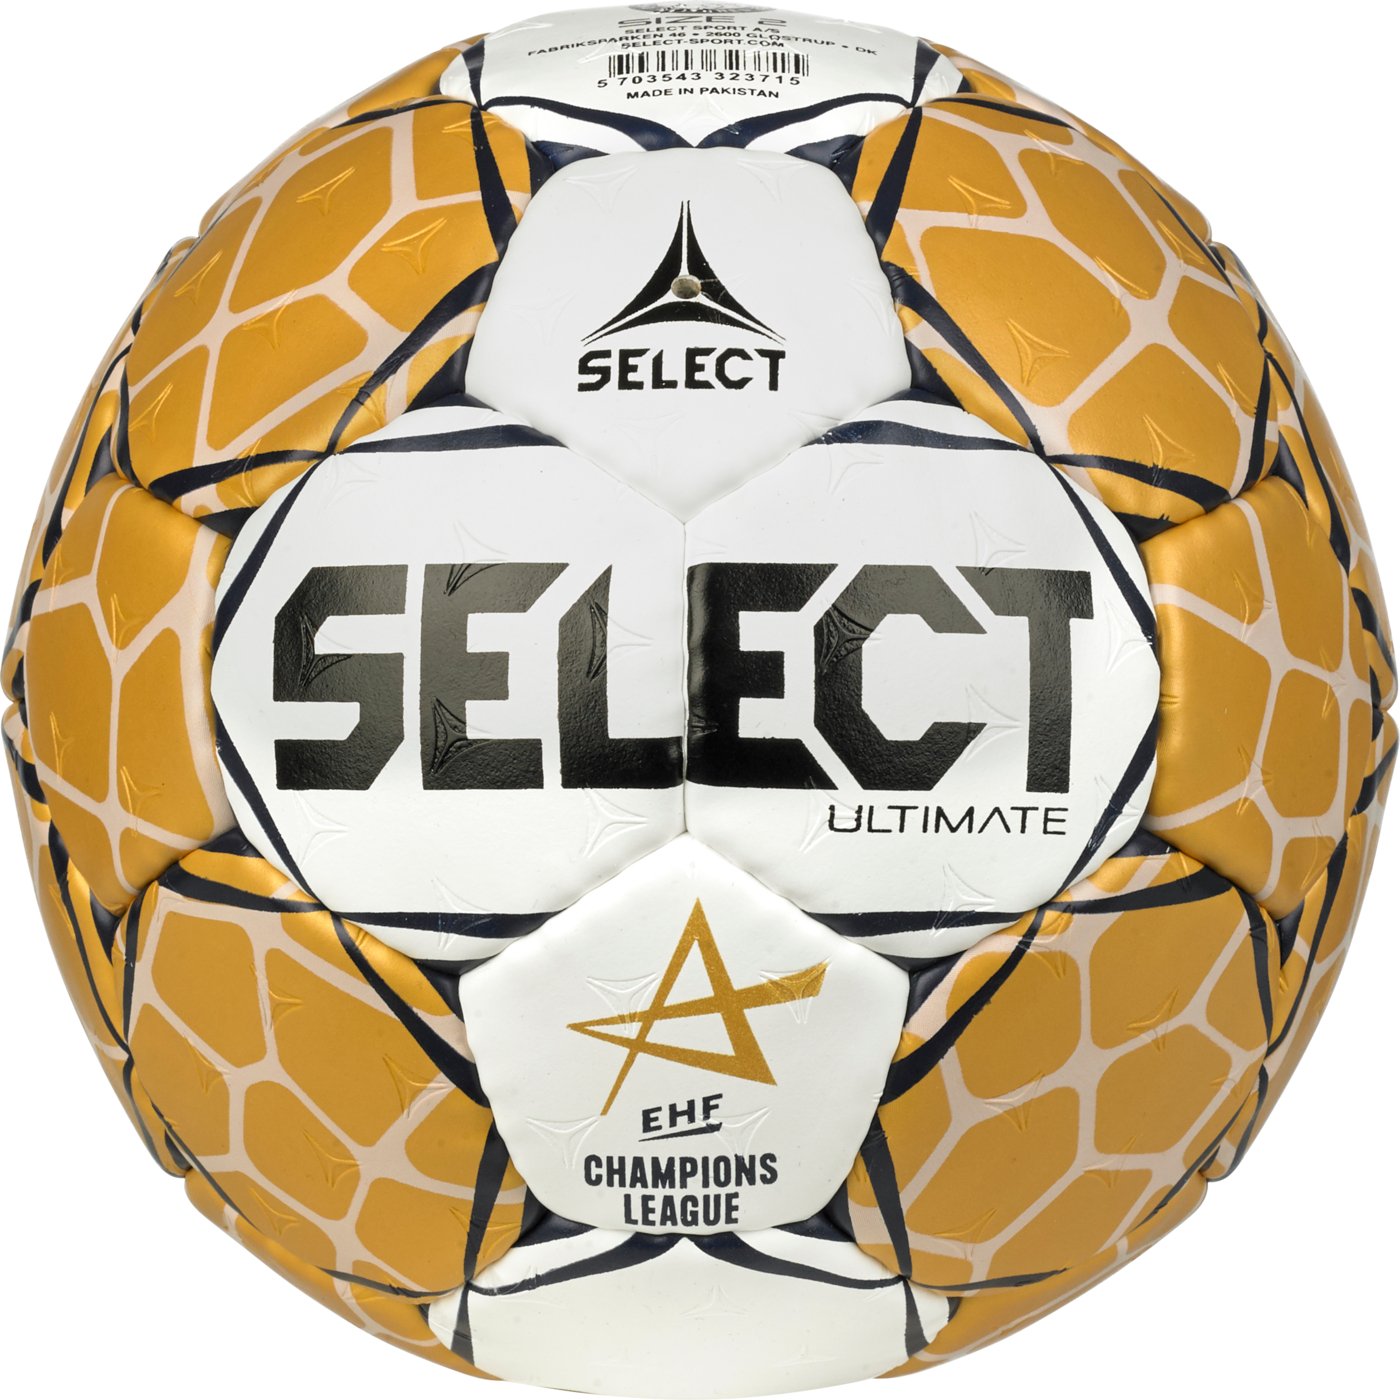 М’яч гандбольний SELECT Ultimate EHF Champions League v23 (715) біл/золотий, junior (2), білий/золотий, junior 2